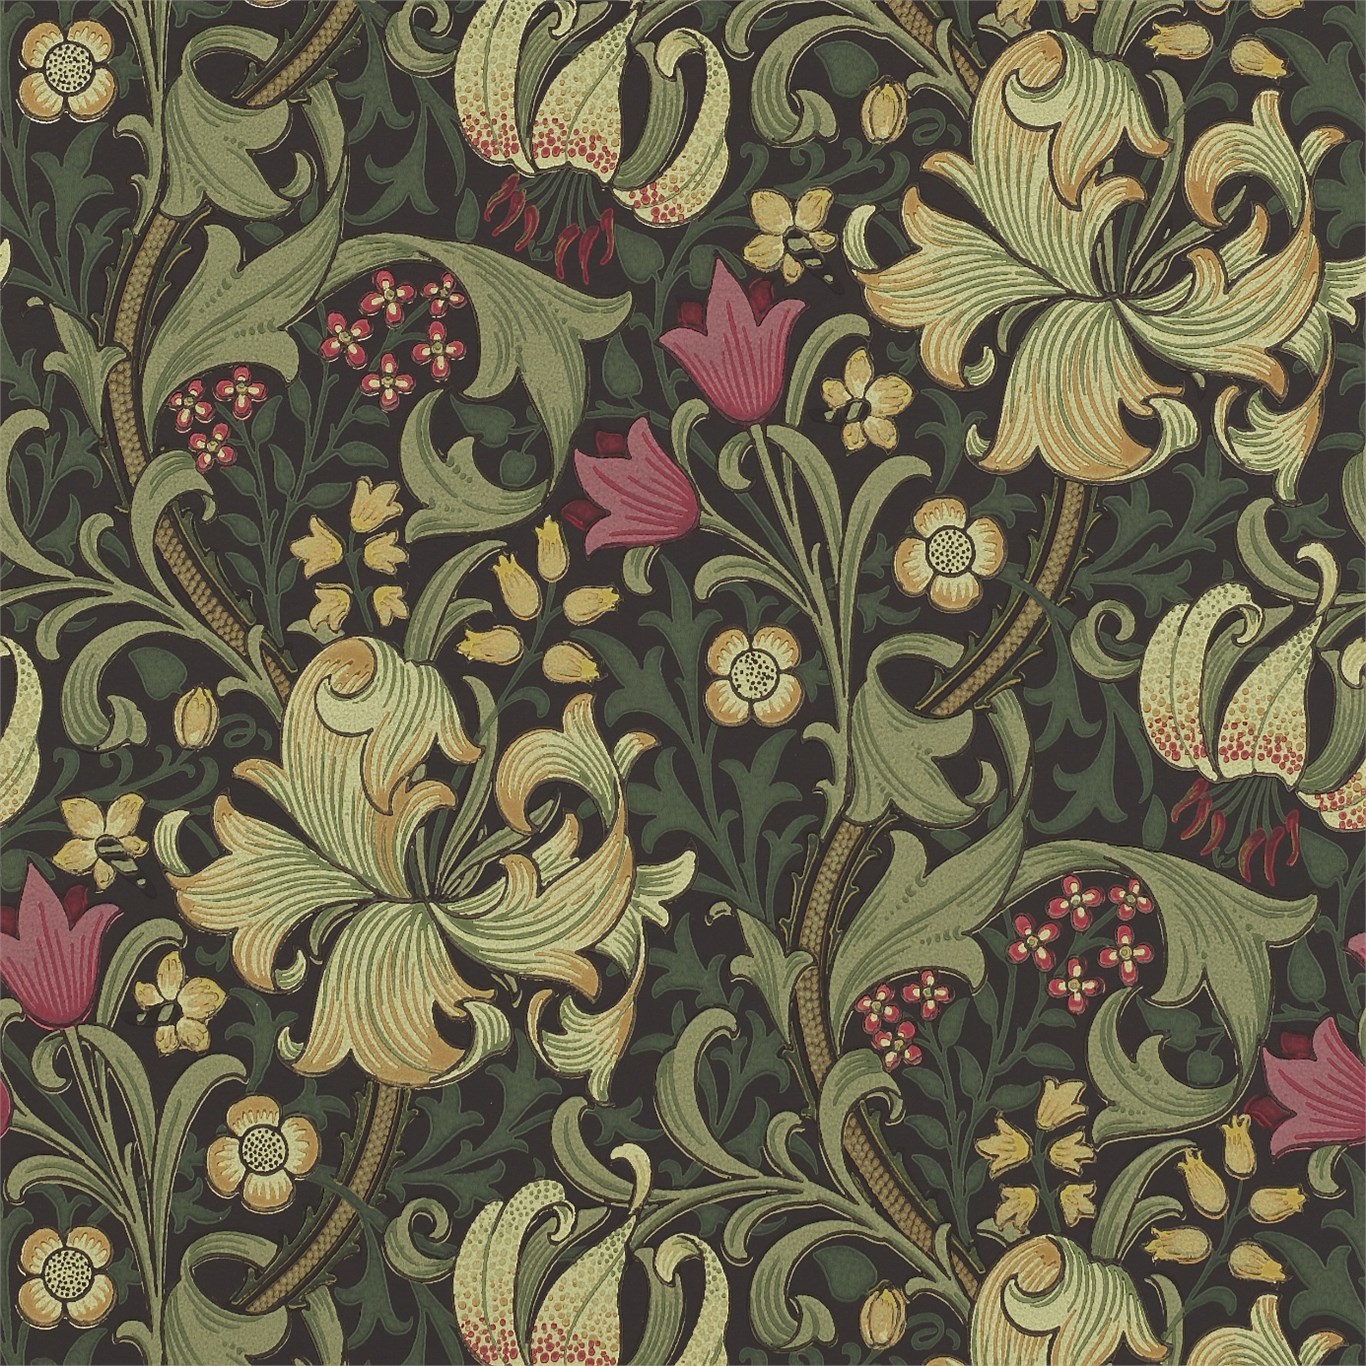 Original Morris Co   Arts and crafts fabrics and wallpaper designs